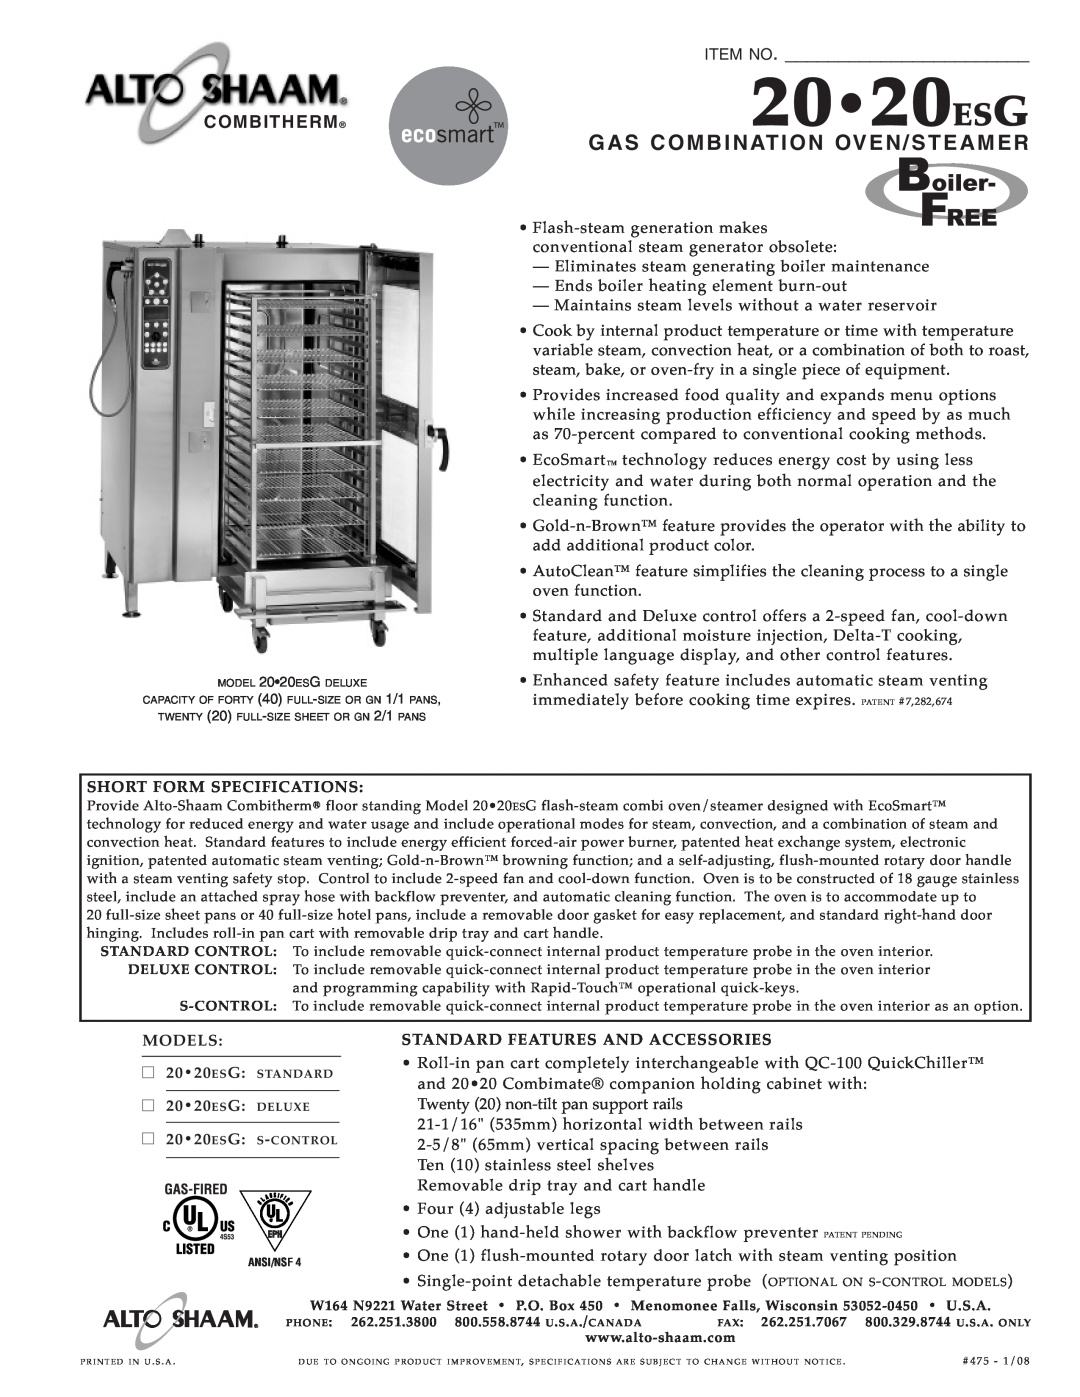 Alto-Shaam 20.20ESG specifications 2020ESG, Gas Com Bination Oven/S Te Ame R, Item No, Combitherm 